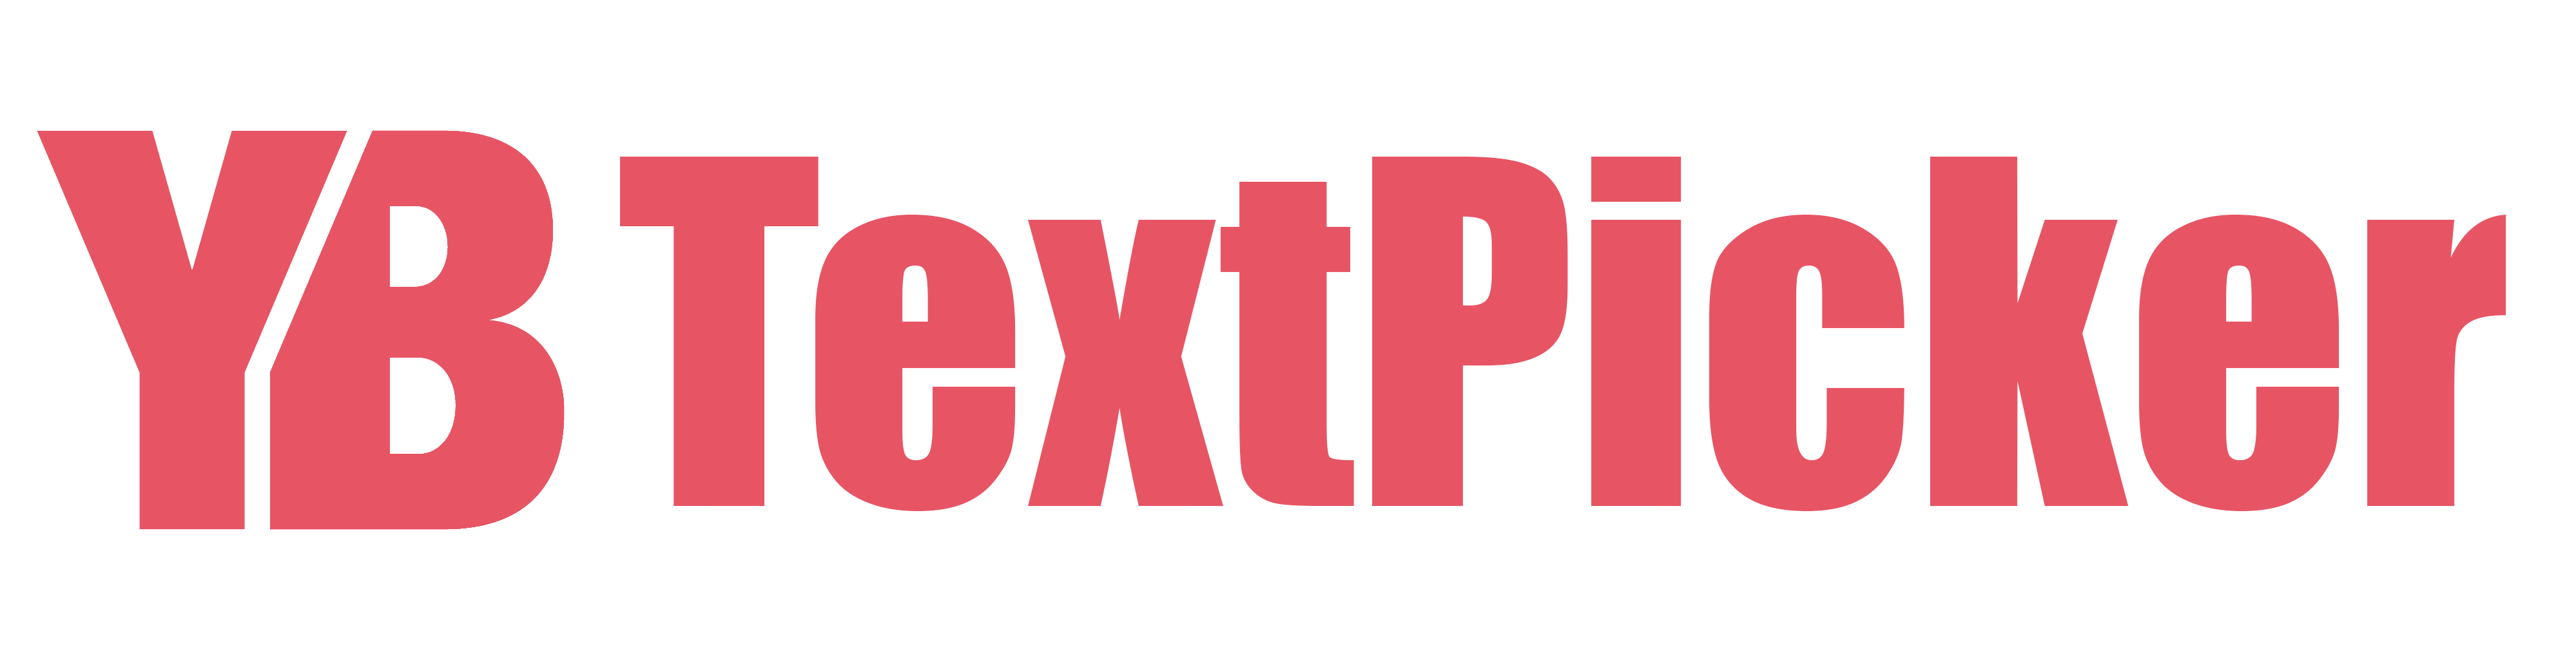 YBTextPicker_Logo